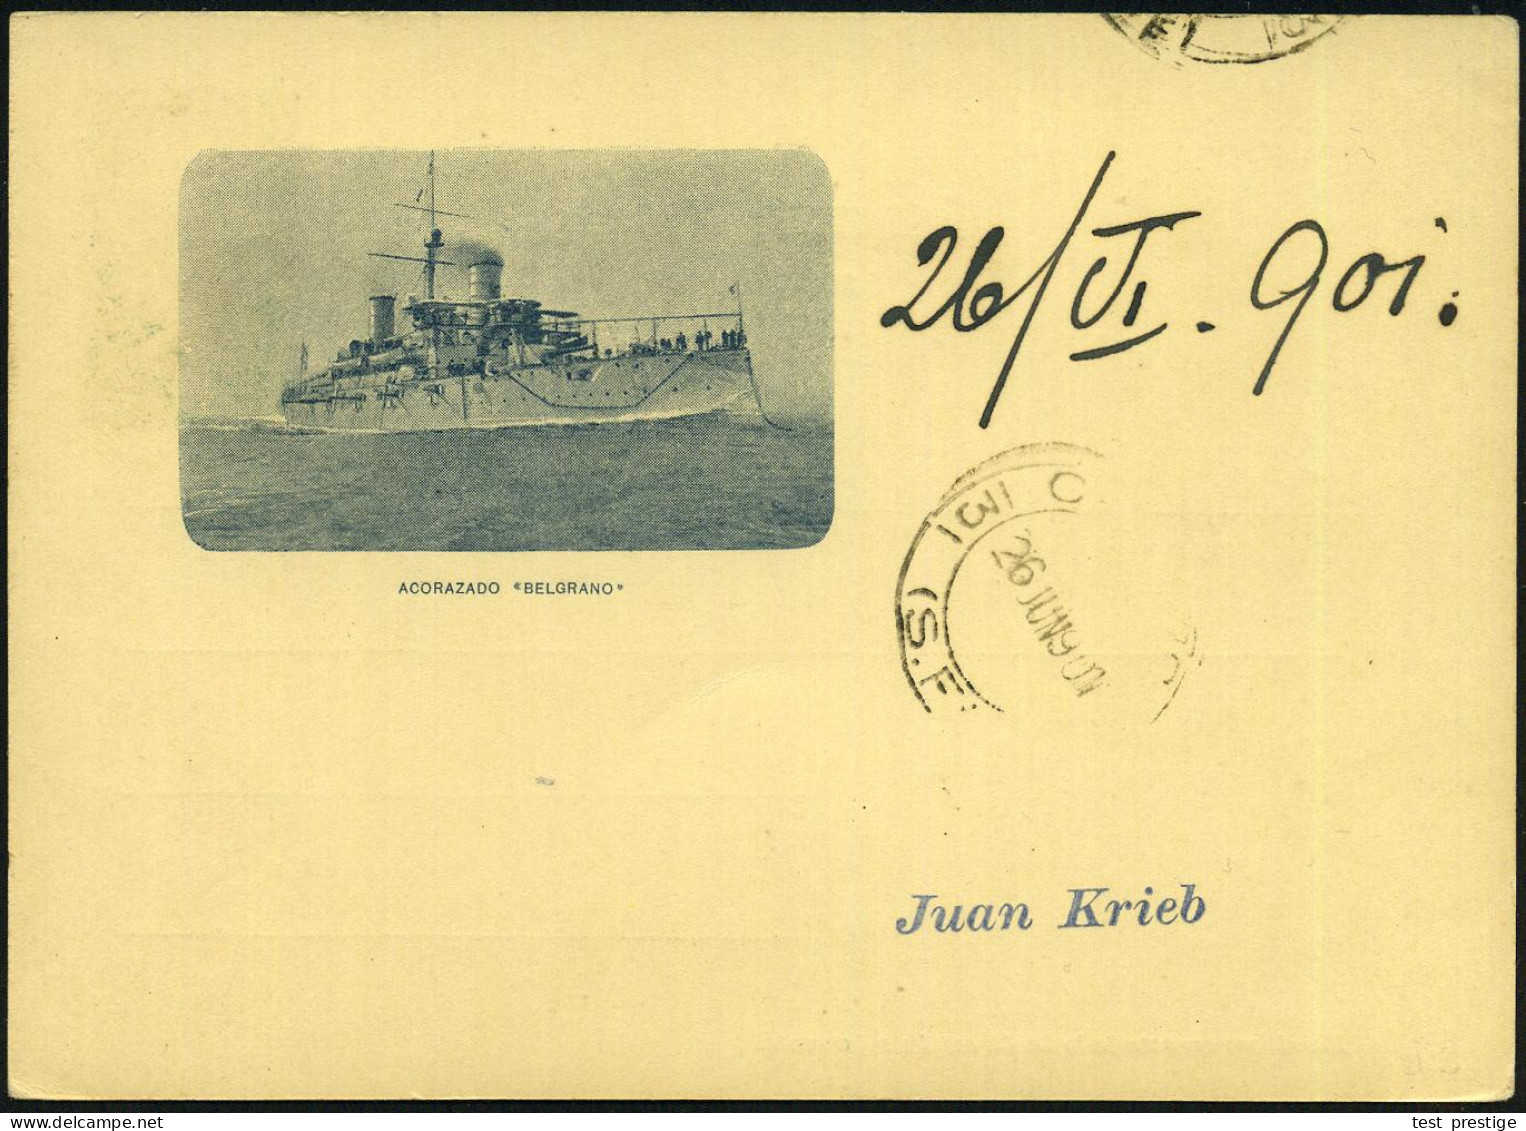 ARGENTINIEN 1901 2 C. Sonder-P. General Mitre: Küstenpanzerschiff "Gen. Belgrano" (Abb. S.Schiffes) Ungebr., Im Falkland - Submarines